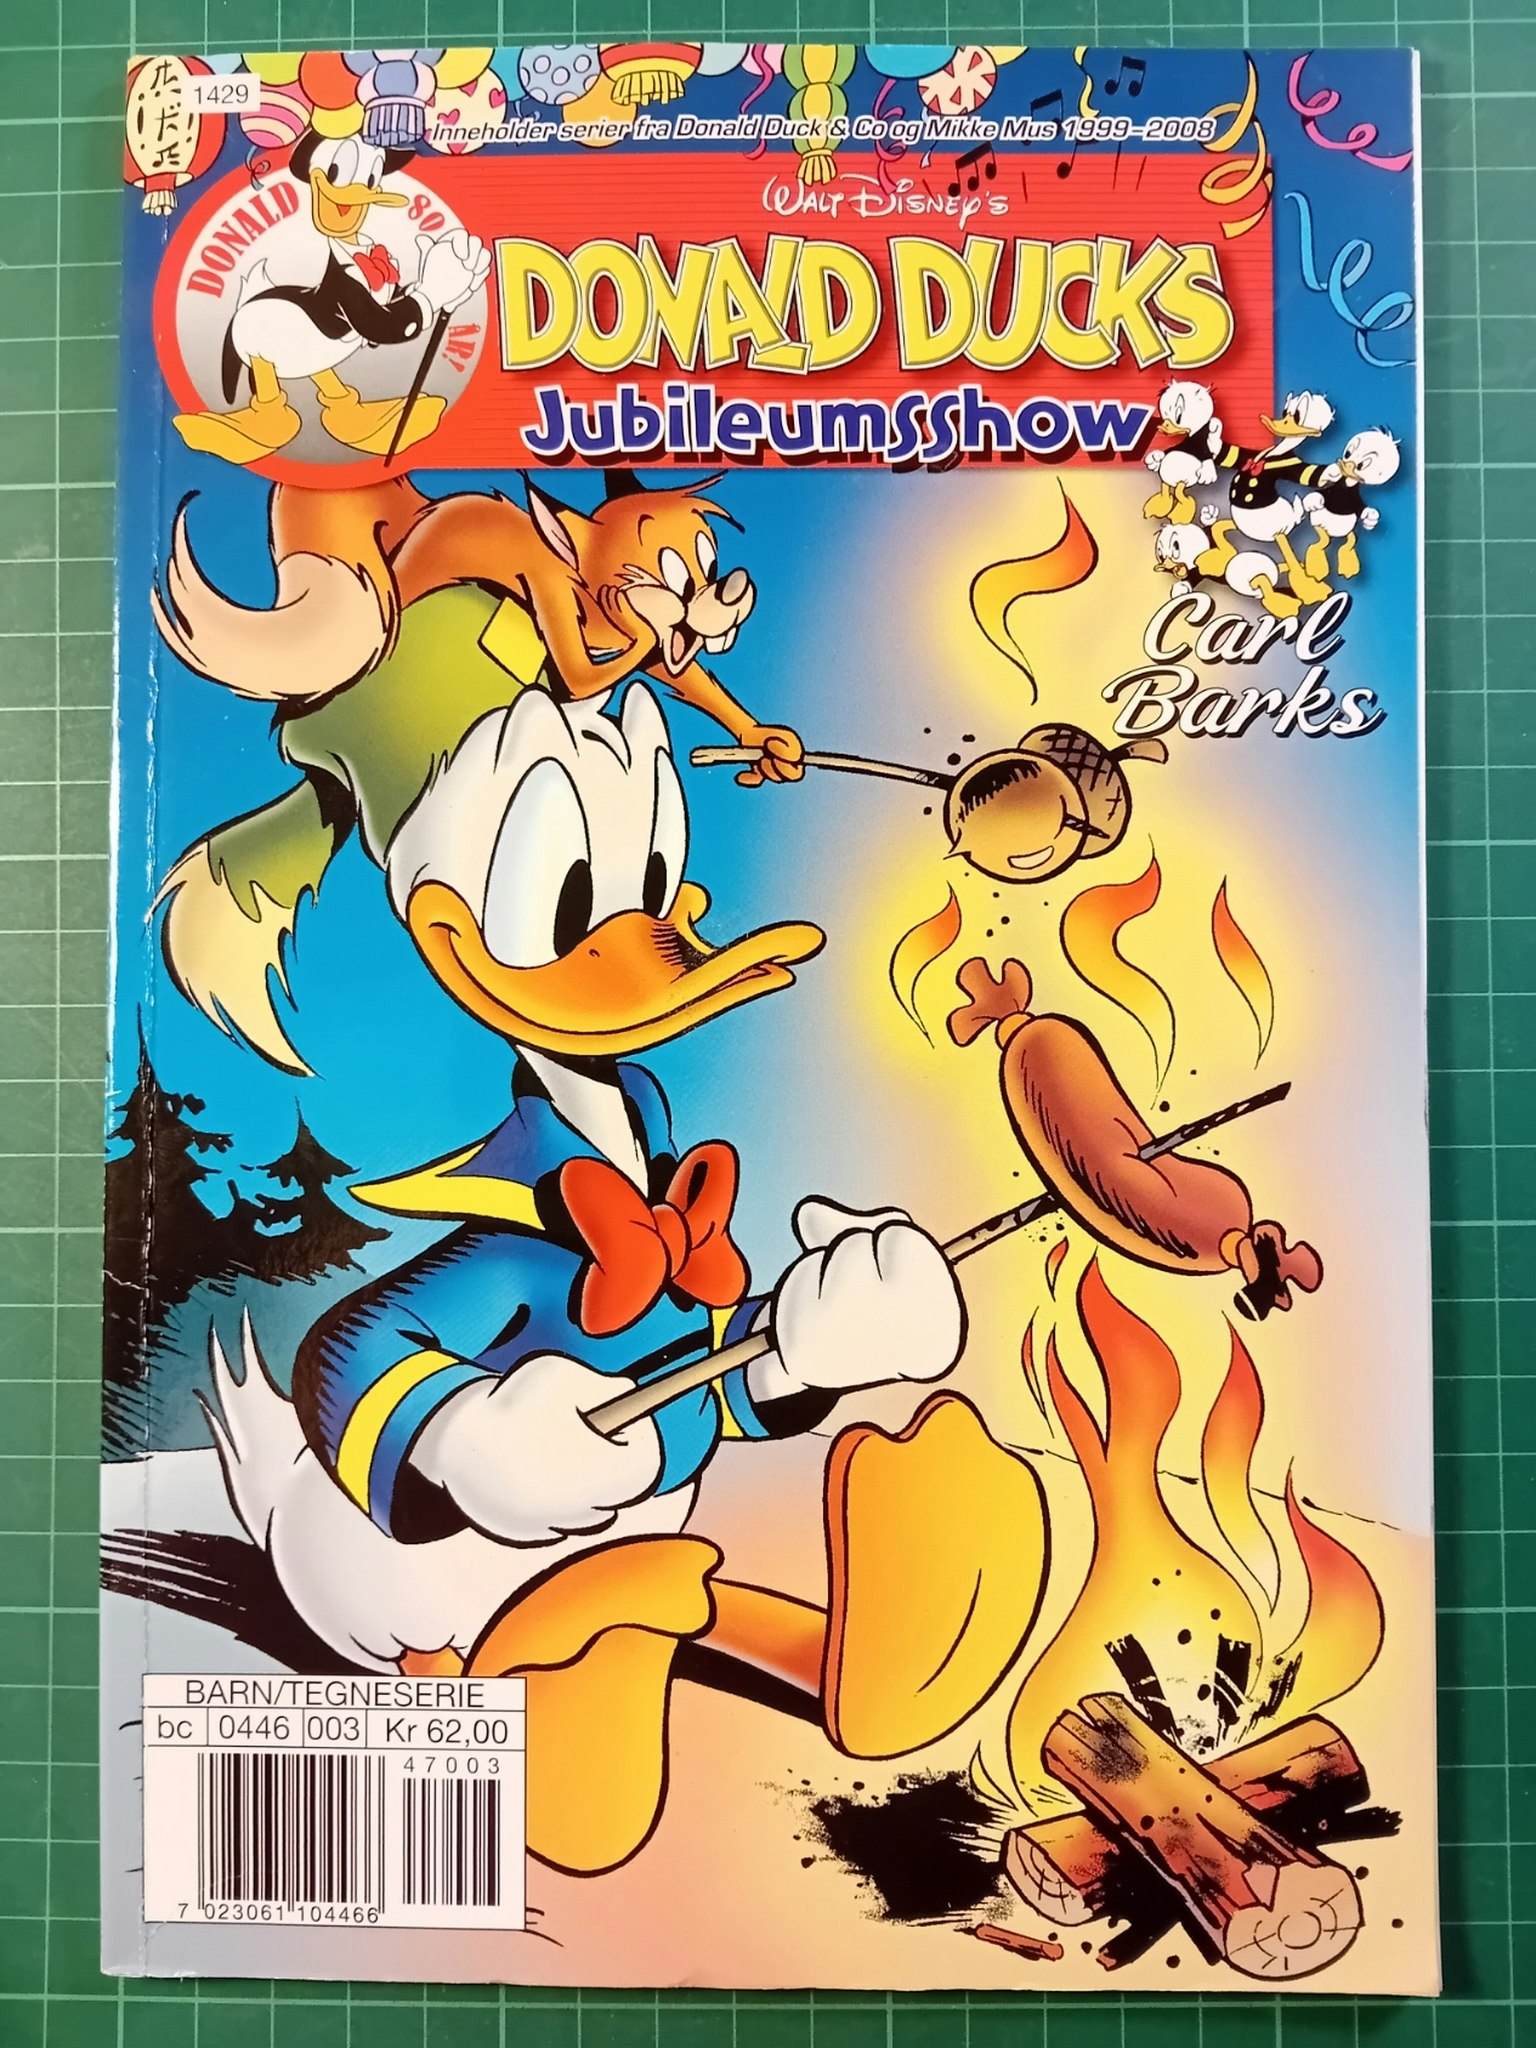 Donald Ducks 1987 Glade show